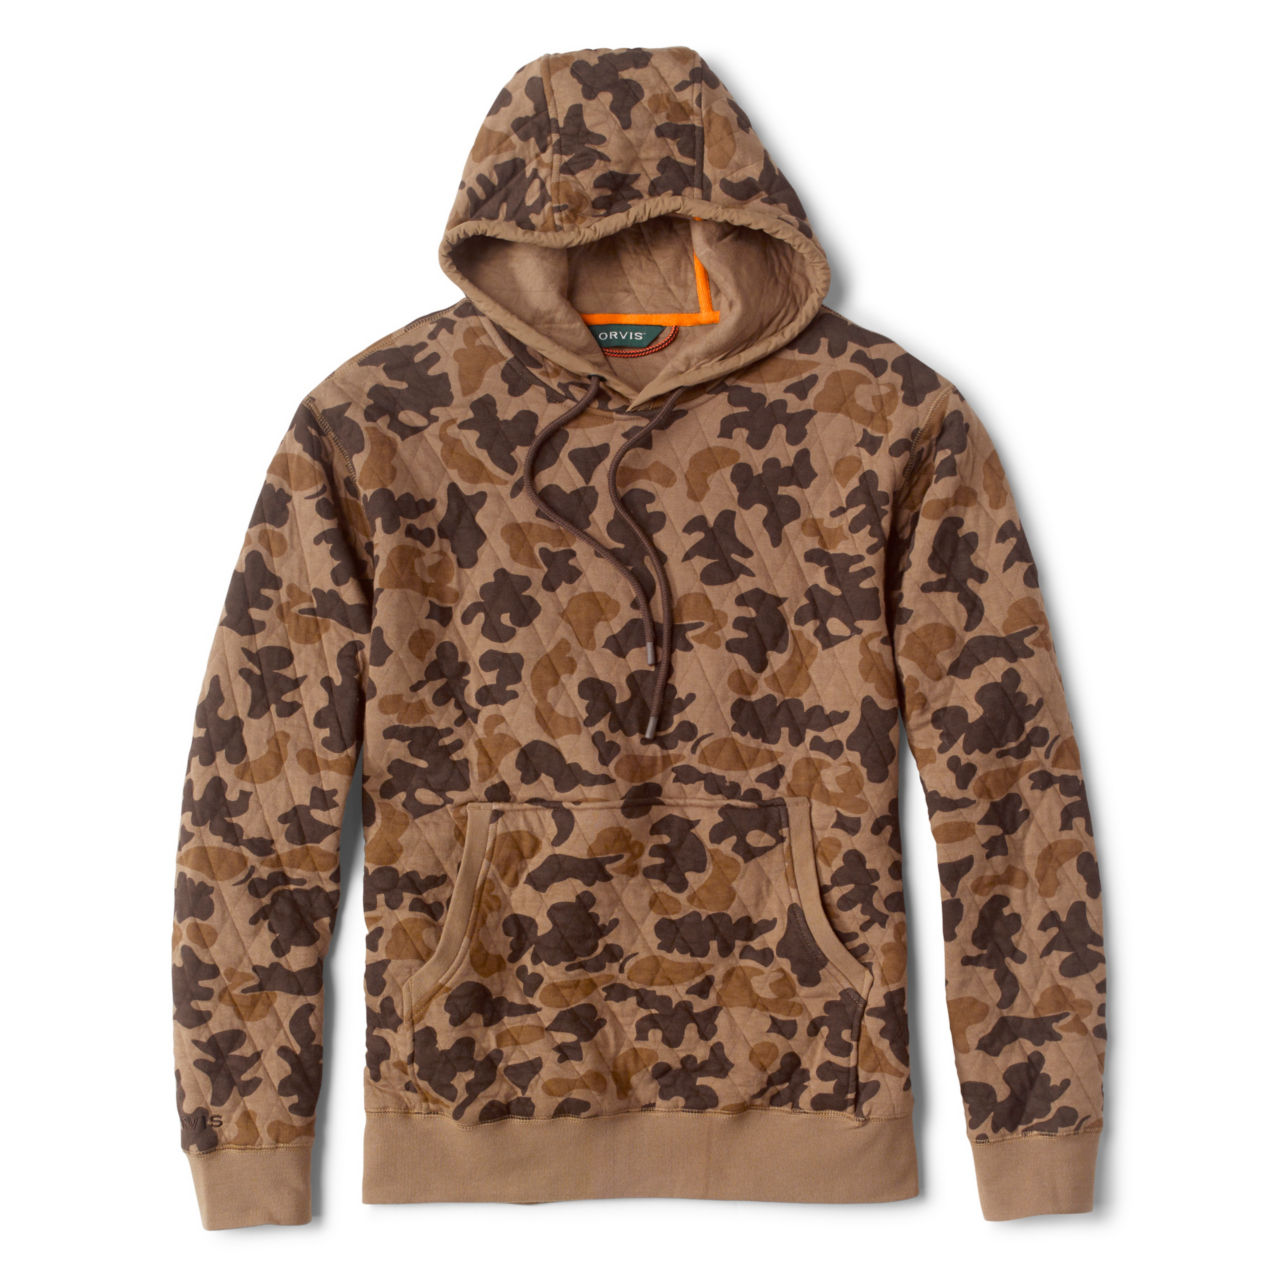 Men's Outdoor Quilted Hooded Sweatshirt | Orvis Camo | Size Medium | Cotton